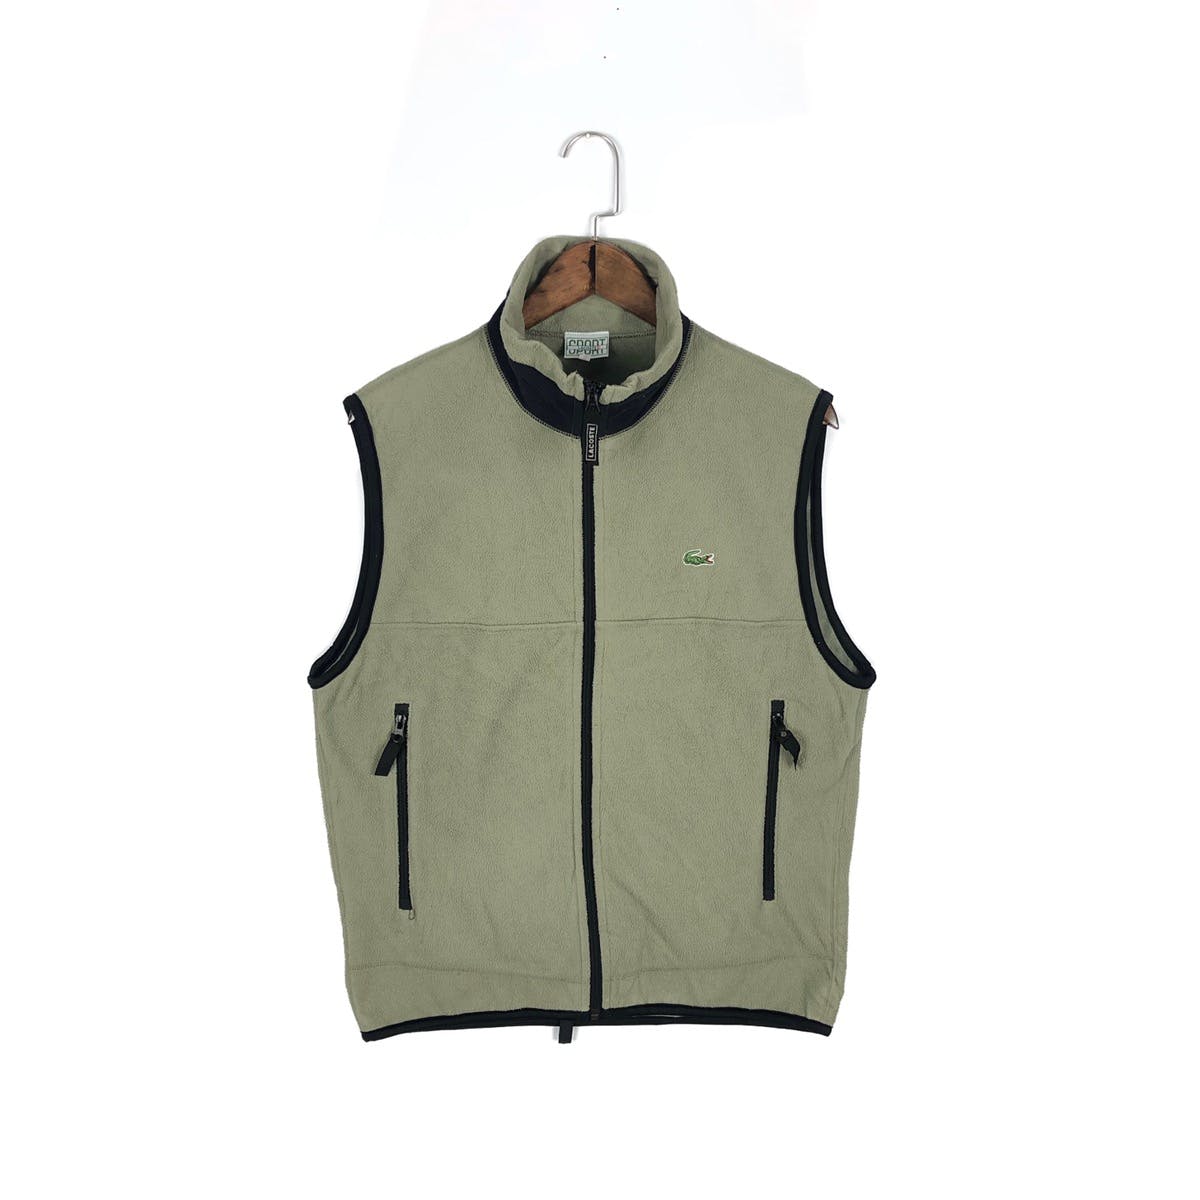 Vintage Lacoste Sport Fleece Zip Up Vest Jacket - 1